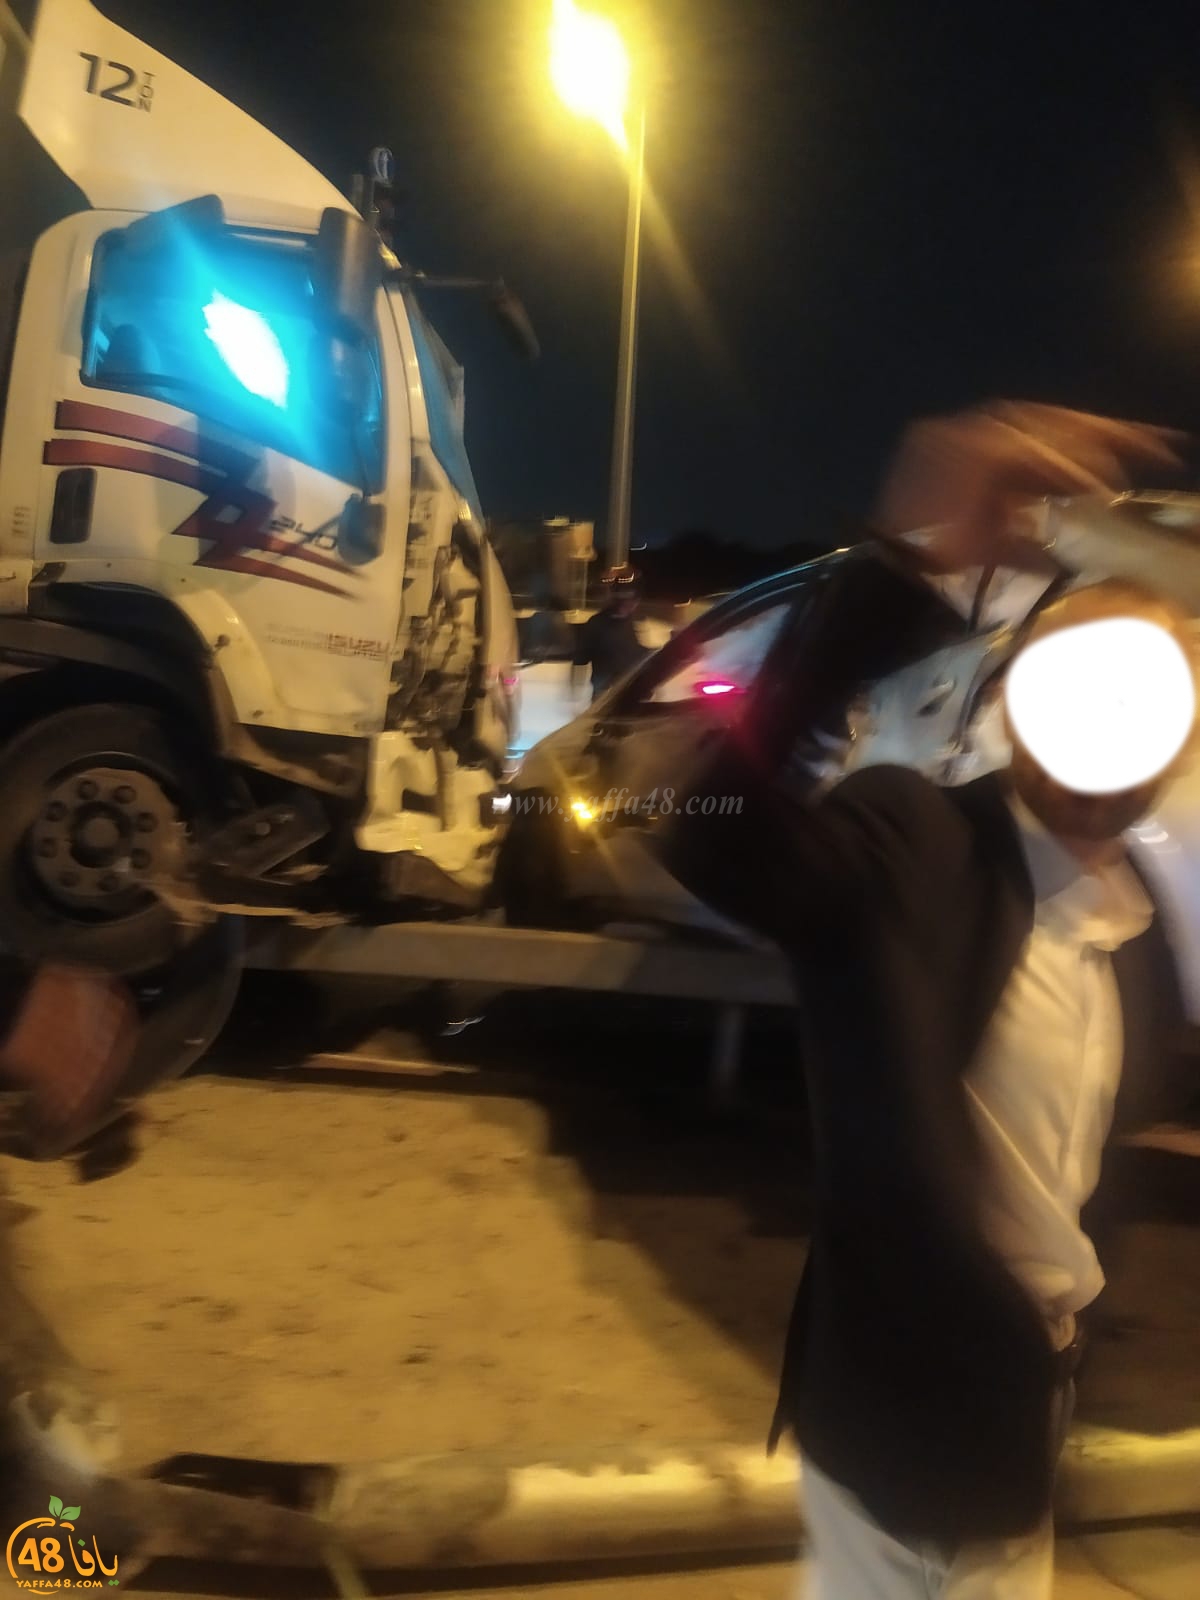  7 اصابات في حادث طرق بين مركبة وشاحنة شرق يافا